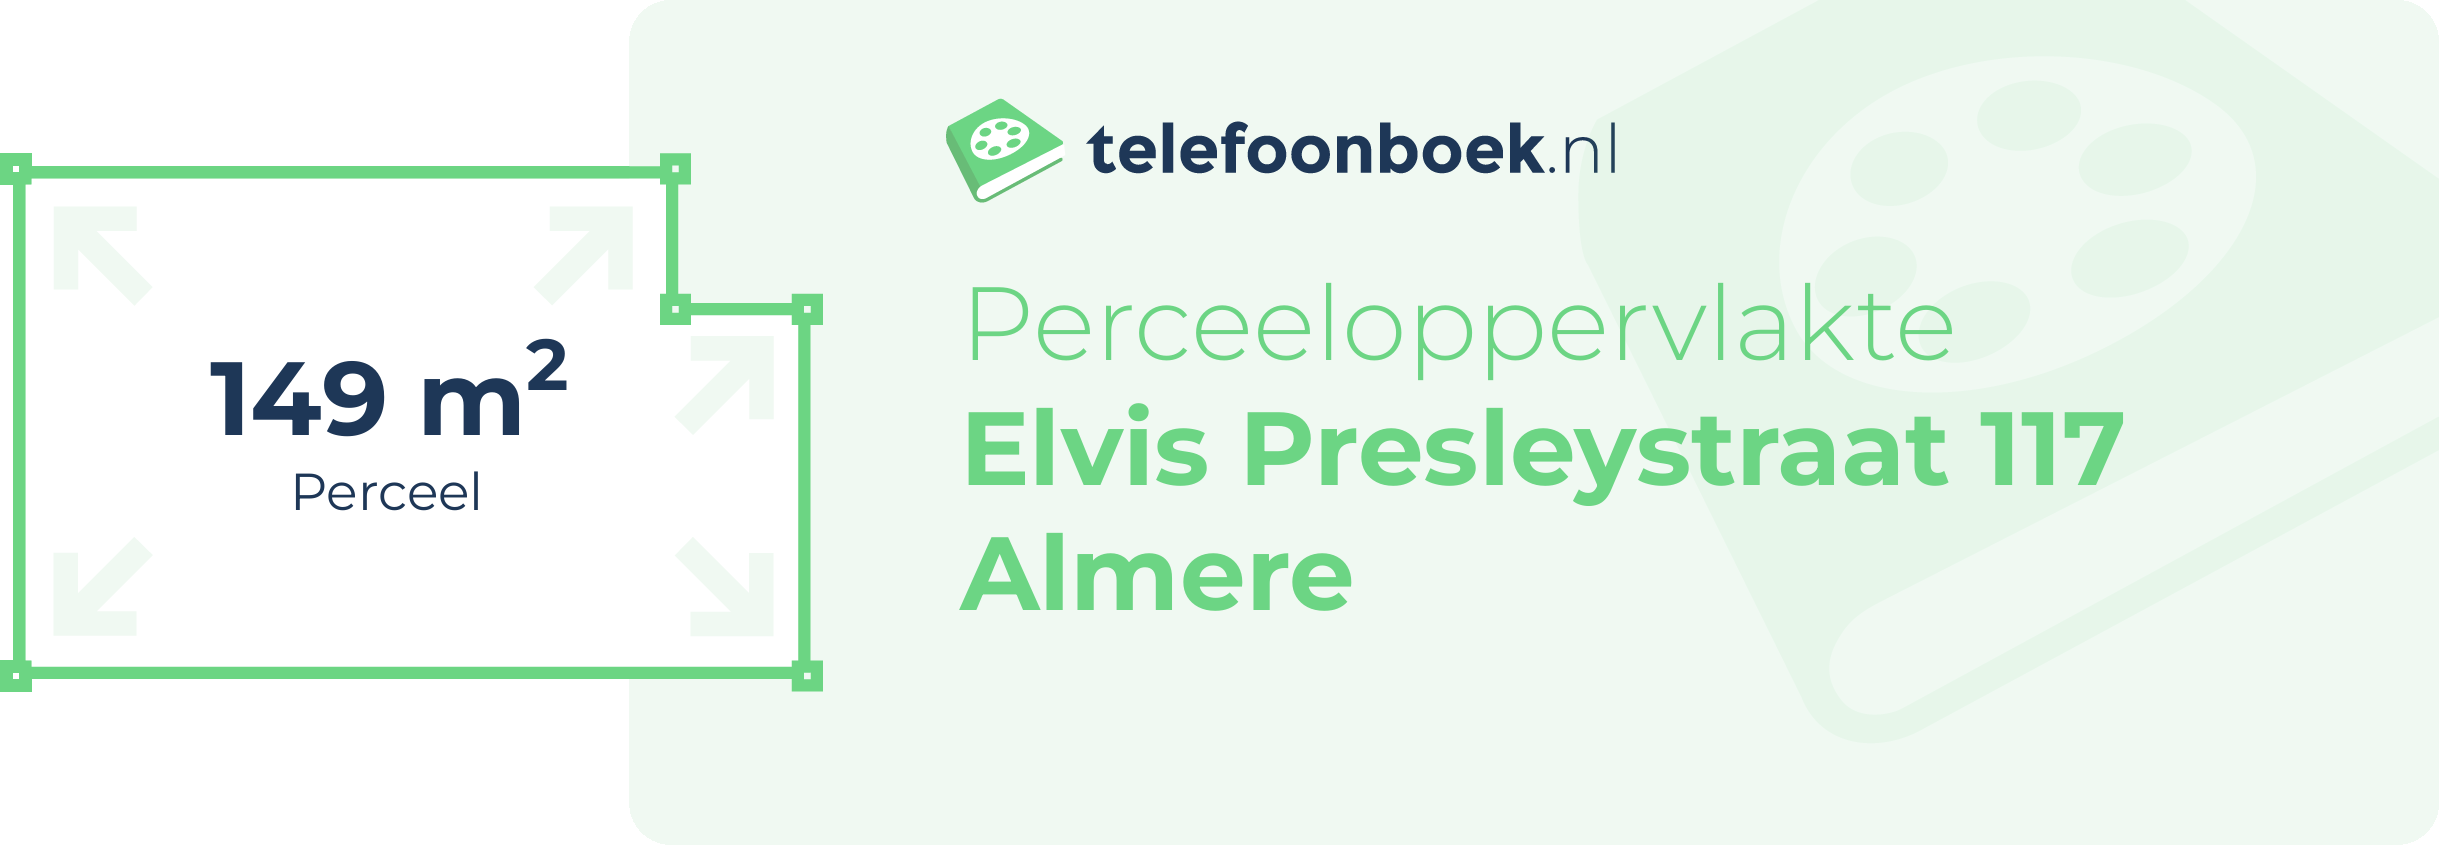 Perceeloppervlakte Elvis Presleystraat 117 Almere